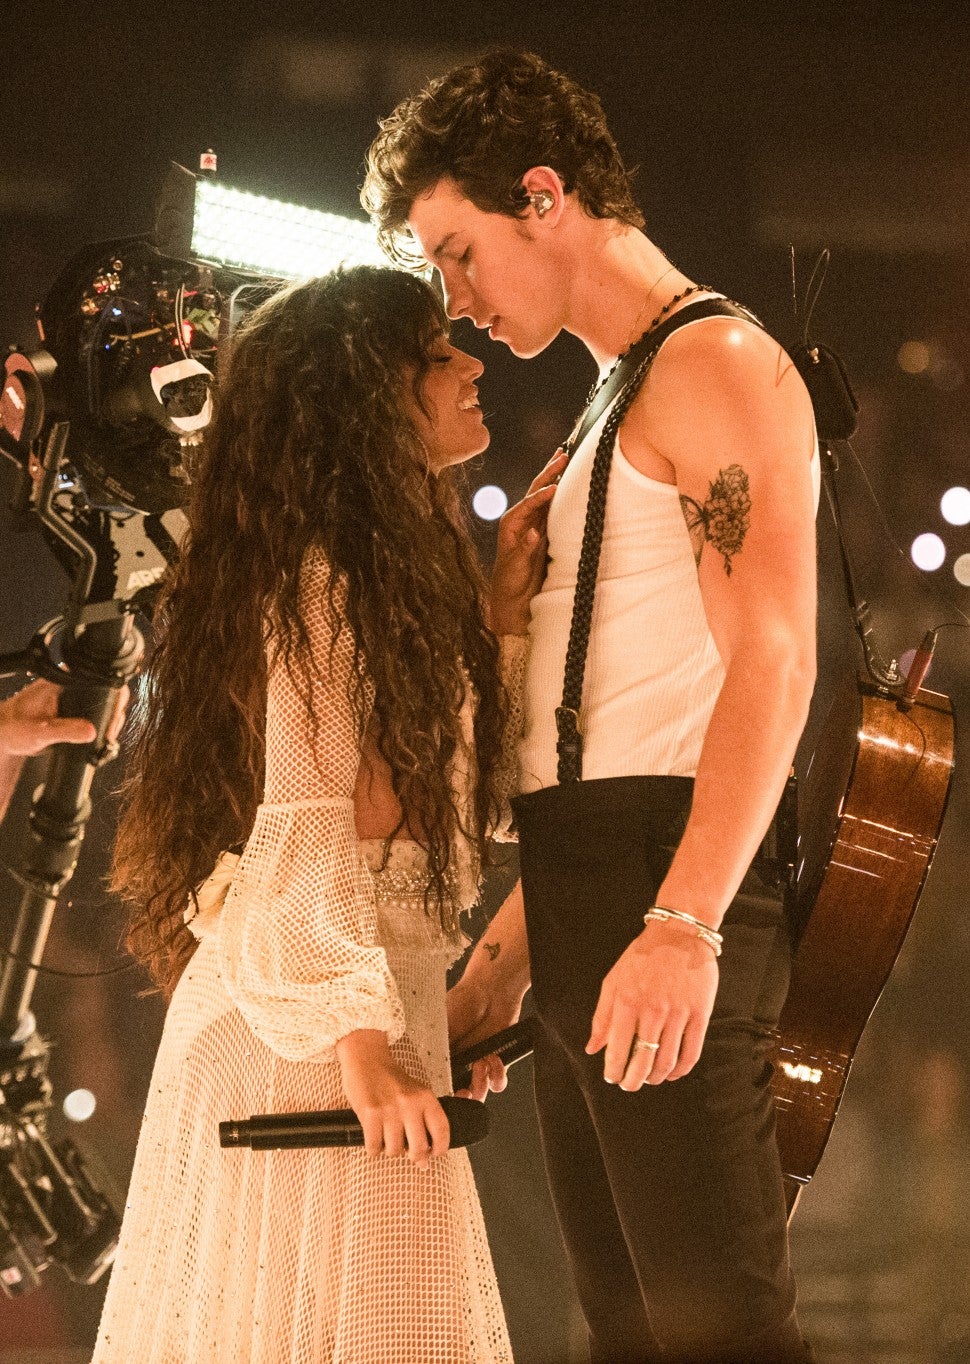 Camila Cabello and Shawn Mendes at 2019 VMAs performance